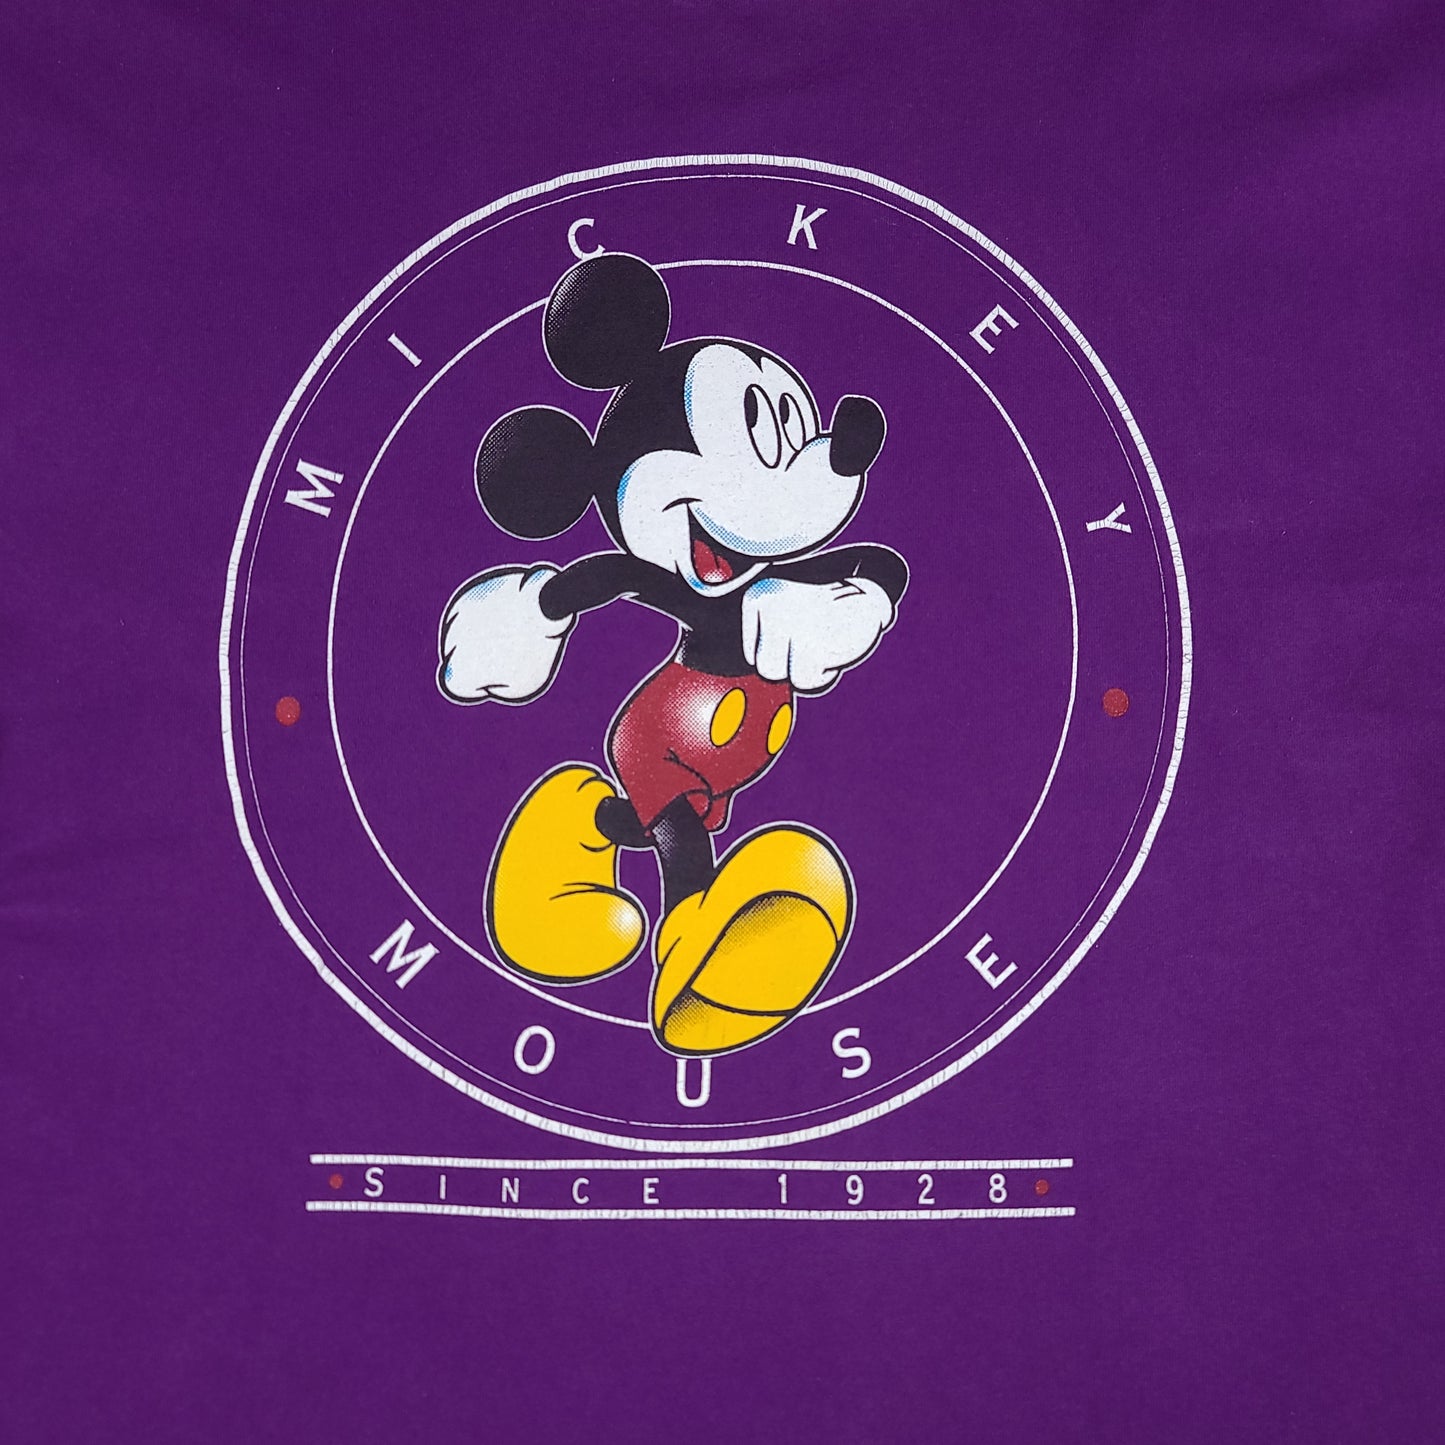 Vintage Purple Mickey Mouse Disney Unlimited Tee